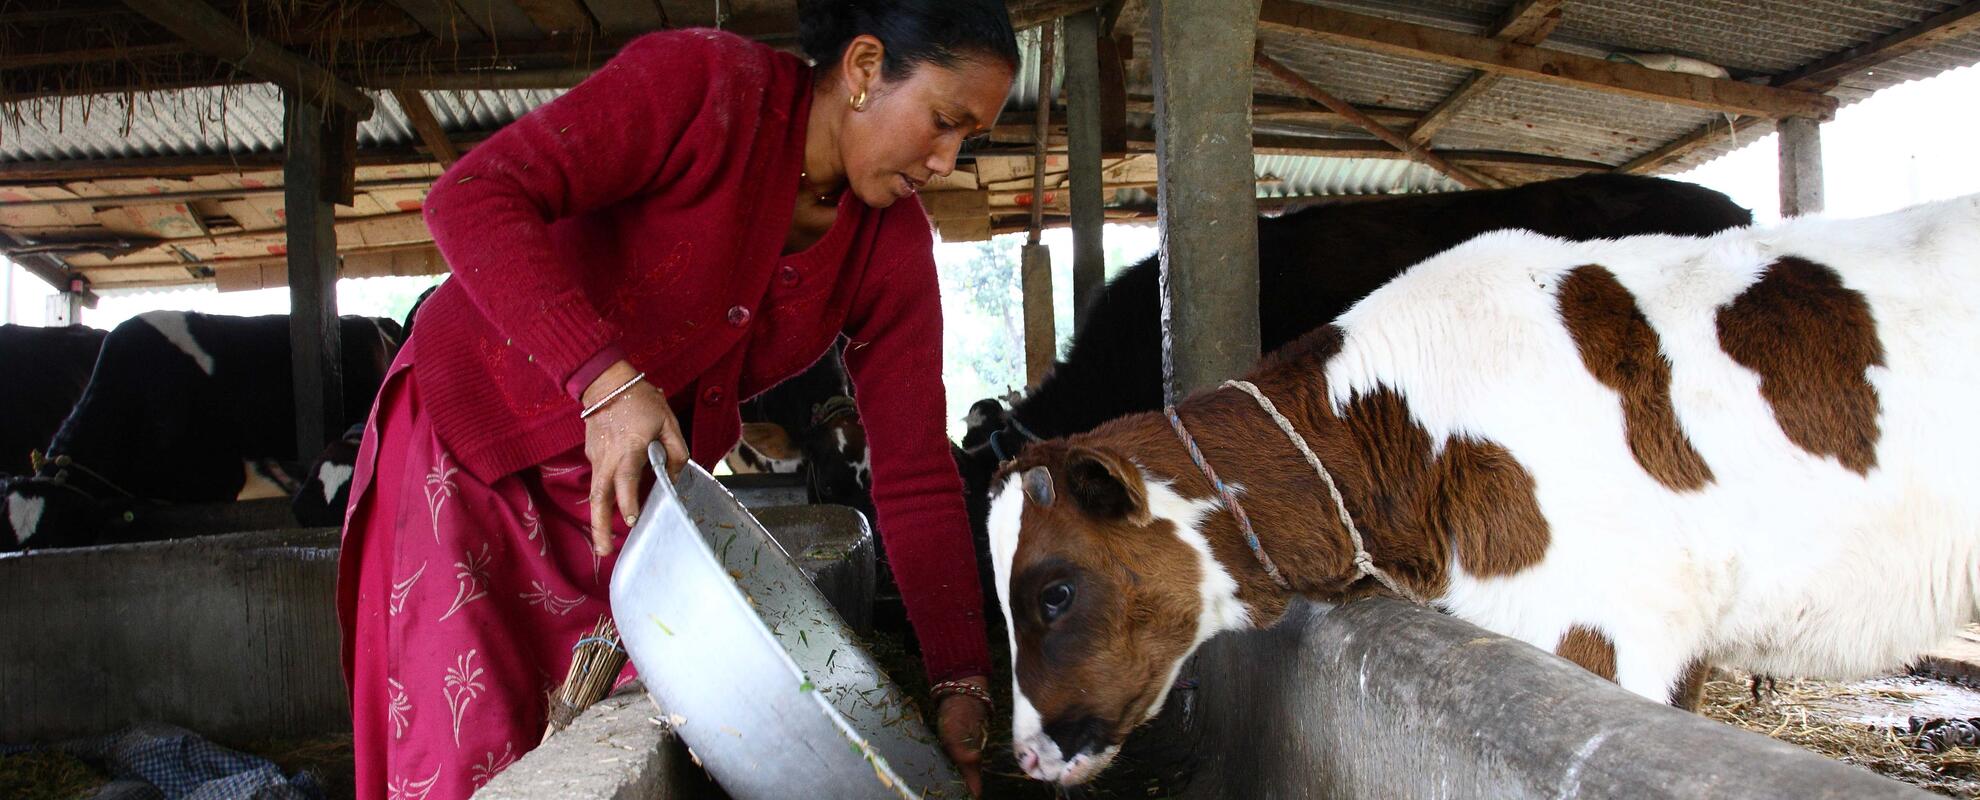 ILRI launches livestock research for development programs in Nepal